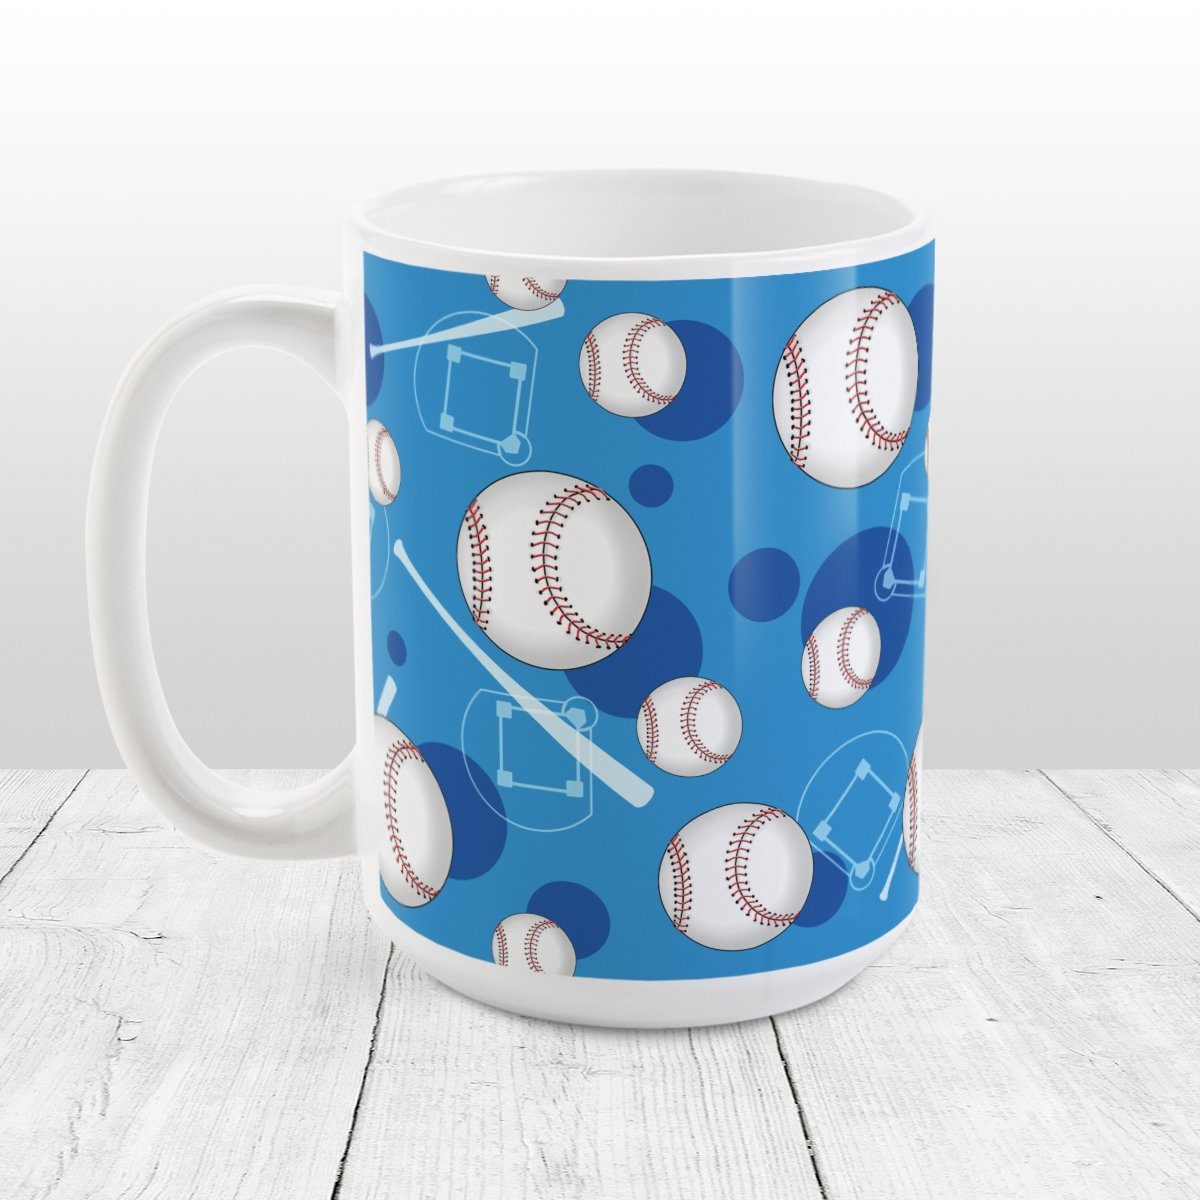 Baseball Themed Pattern Blue Mug at Amy's Coffee Mugs